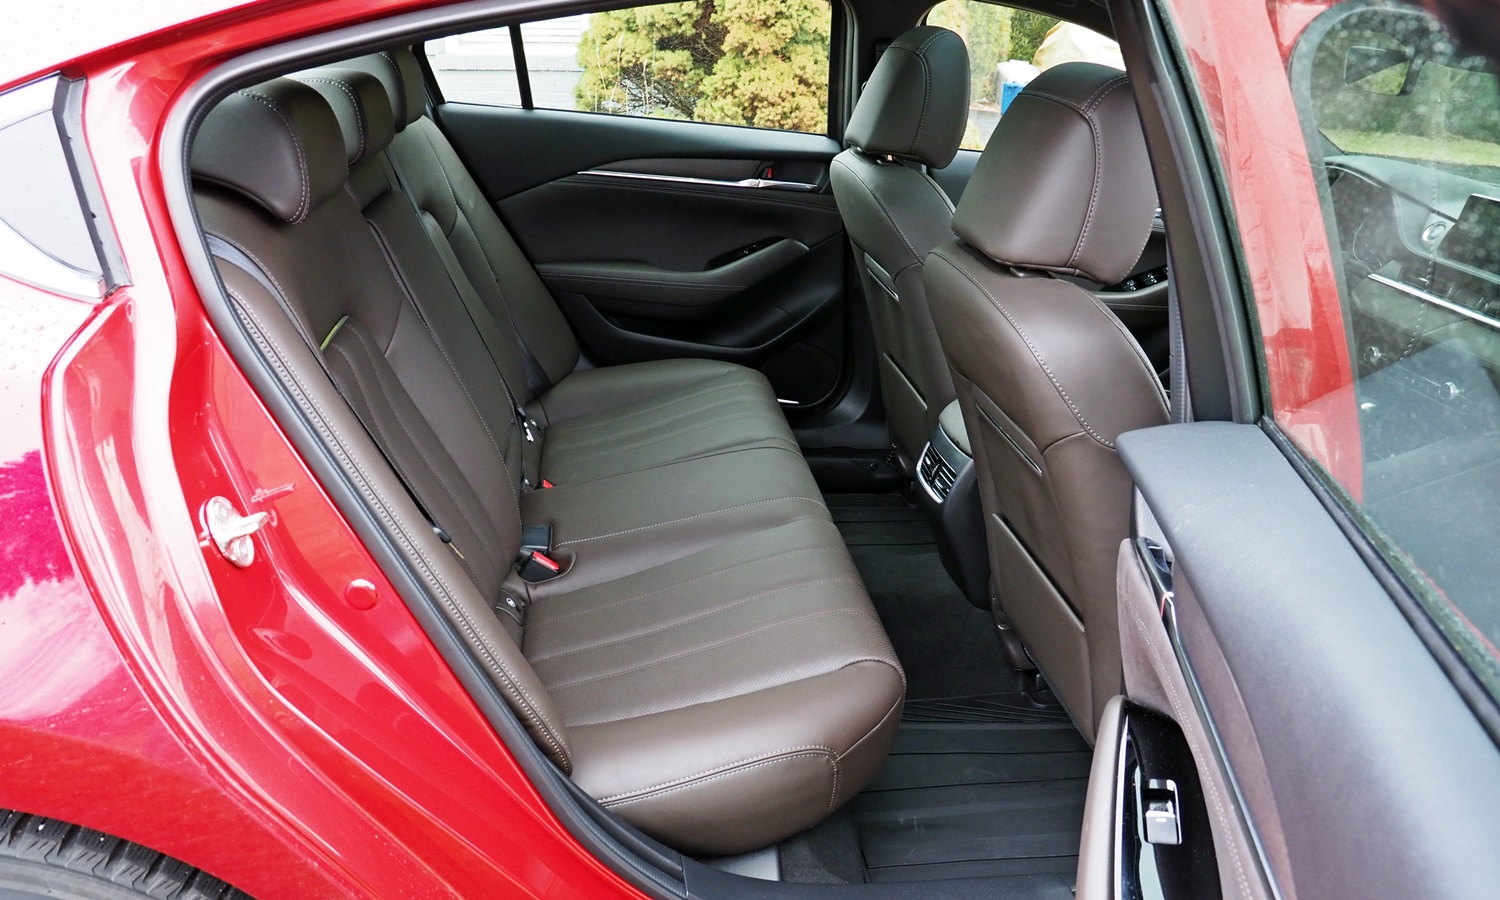 Mazda6 Reviews: Mazda6 rear seat